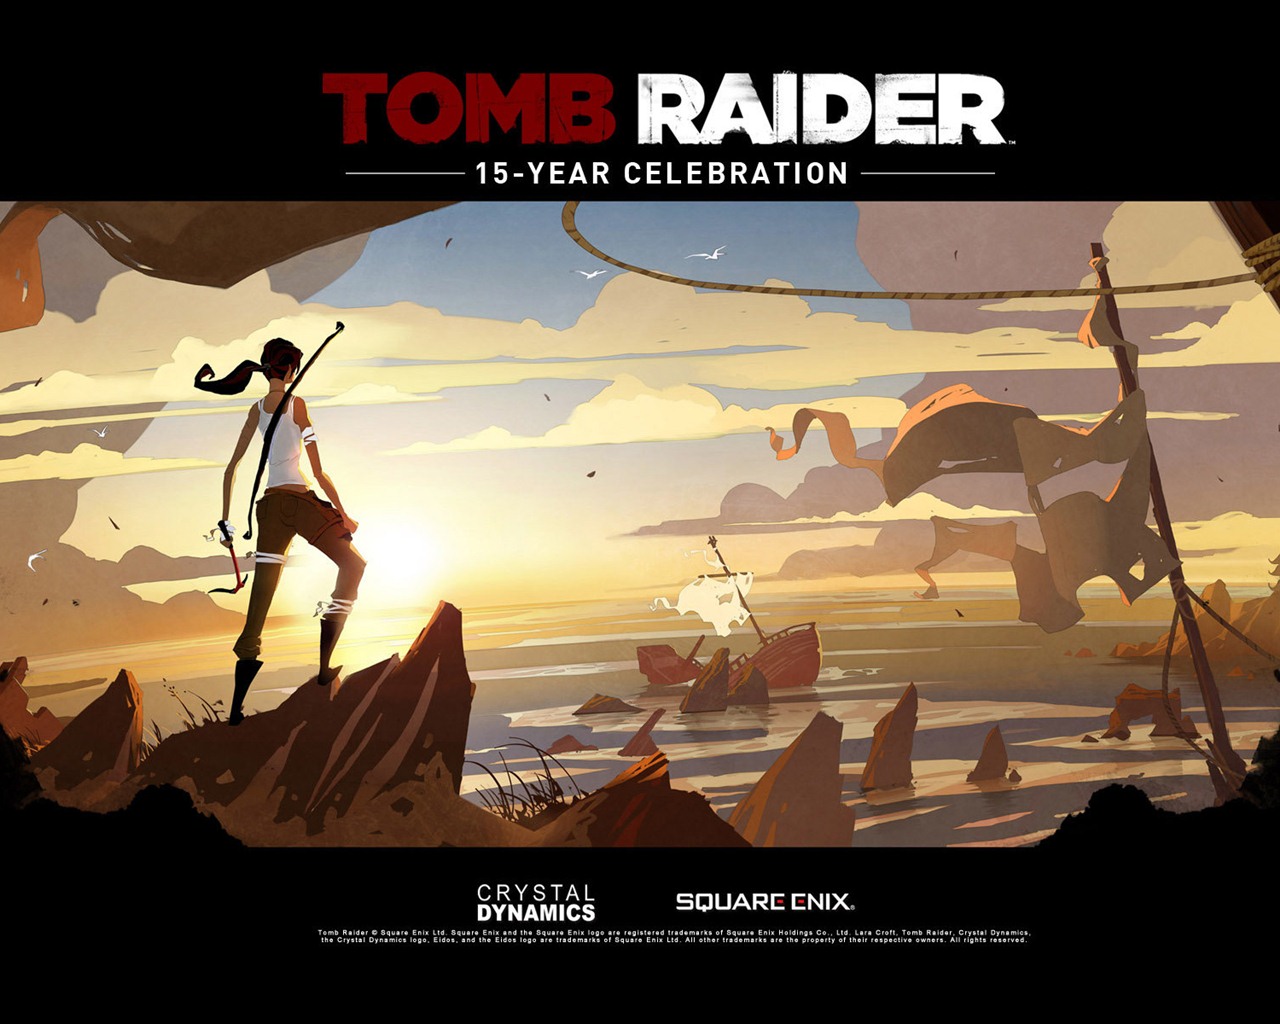 Tomb Raider 15-Year Celebration 古墓丽影15周年纪念版 高清壁纸13 - 1280x1024